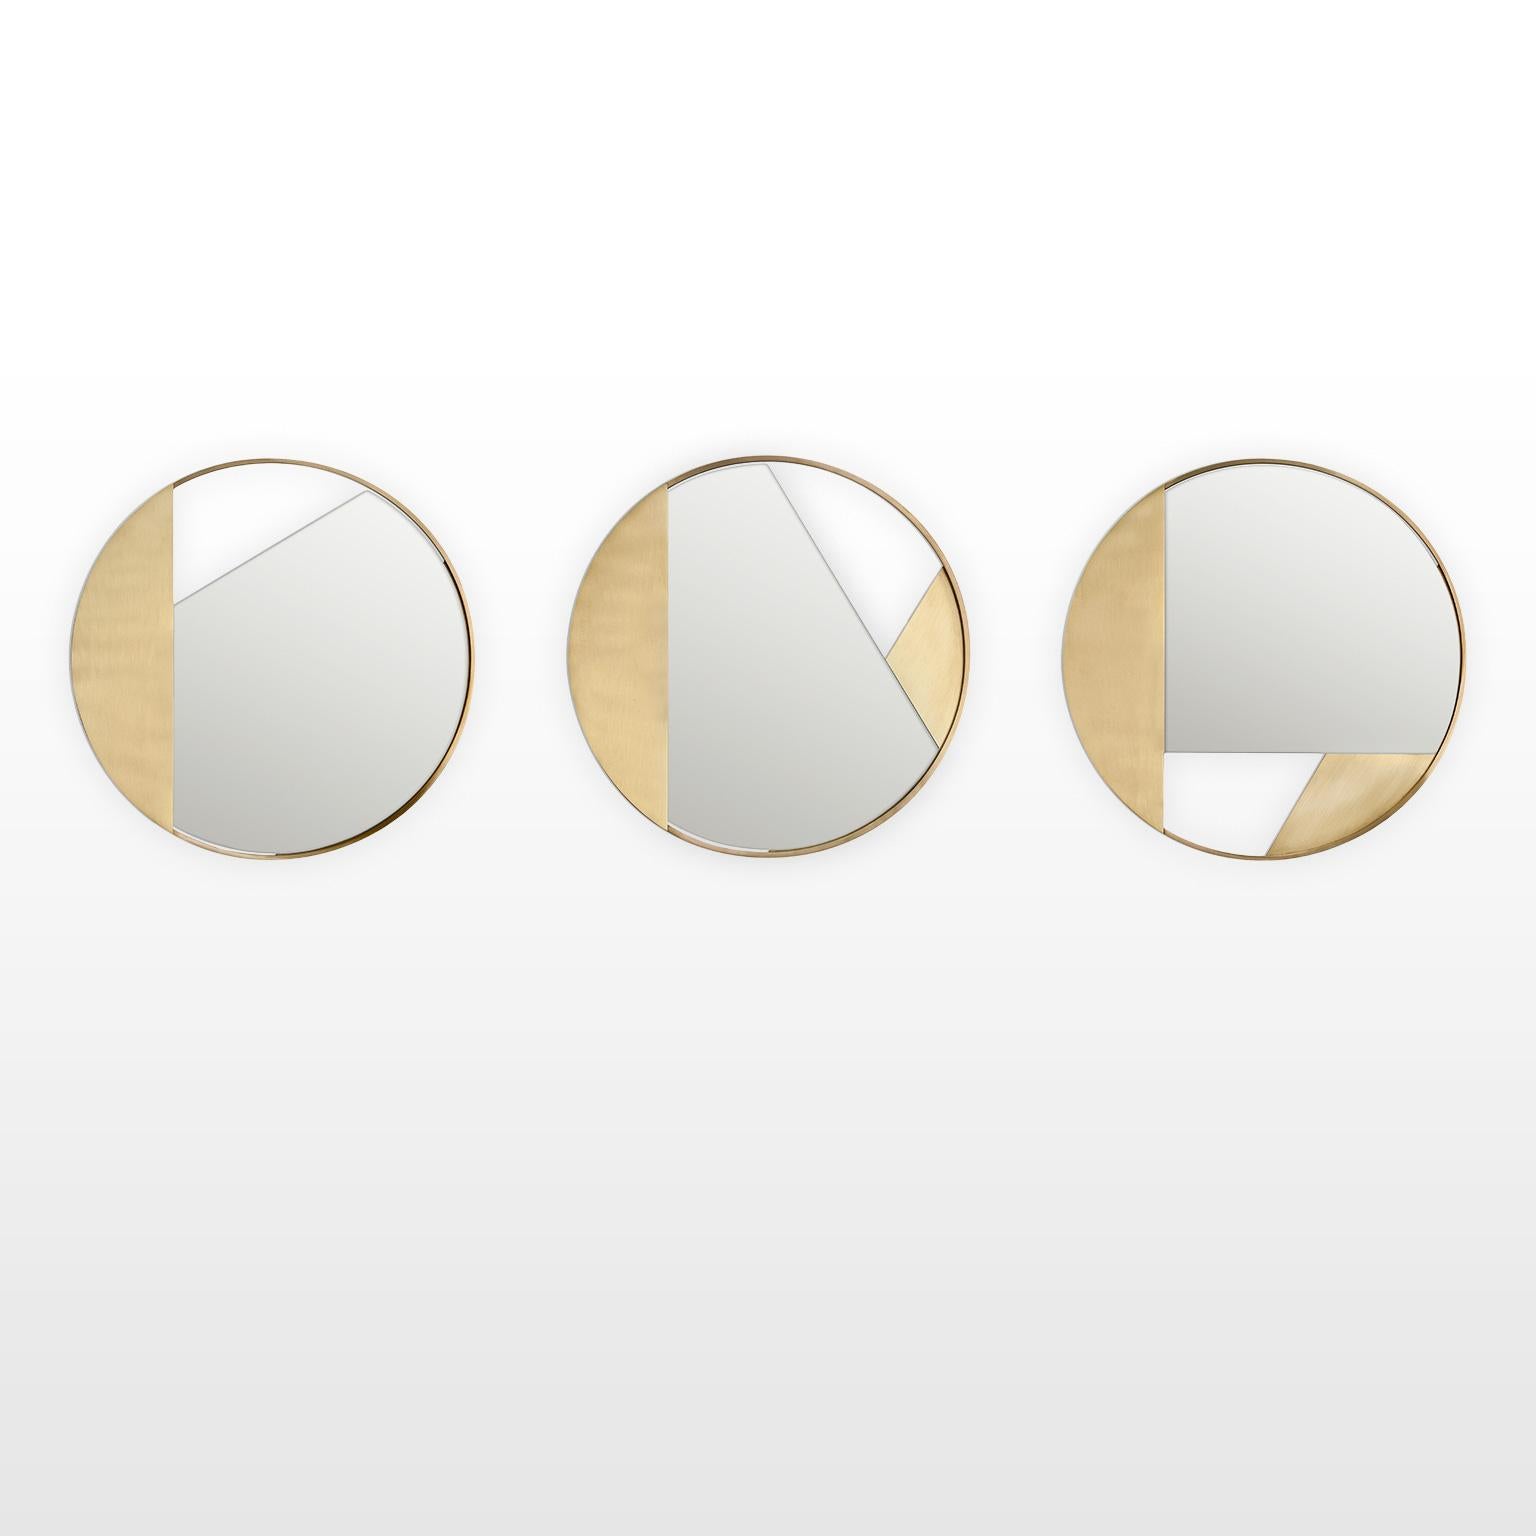 Contemporary Limited Edition Brass Mirror, Revolution 90 V1 by Edizione Limitata For Sale 2